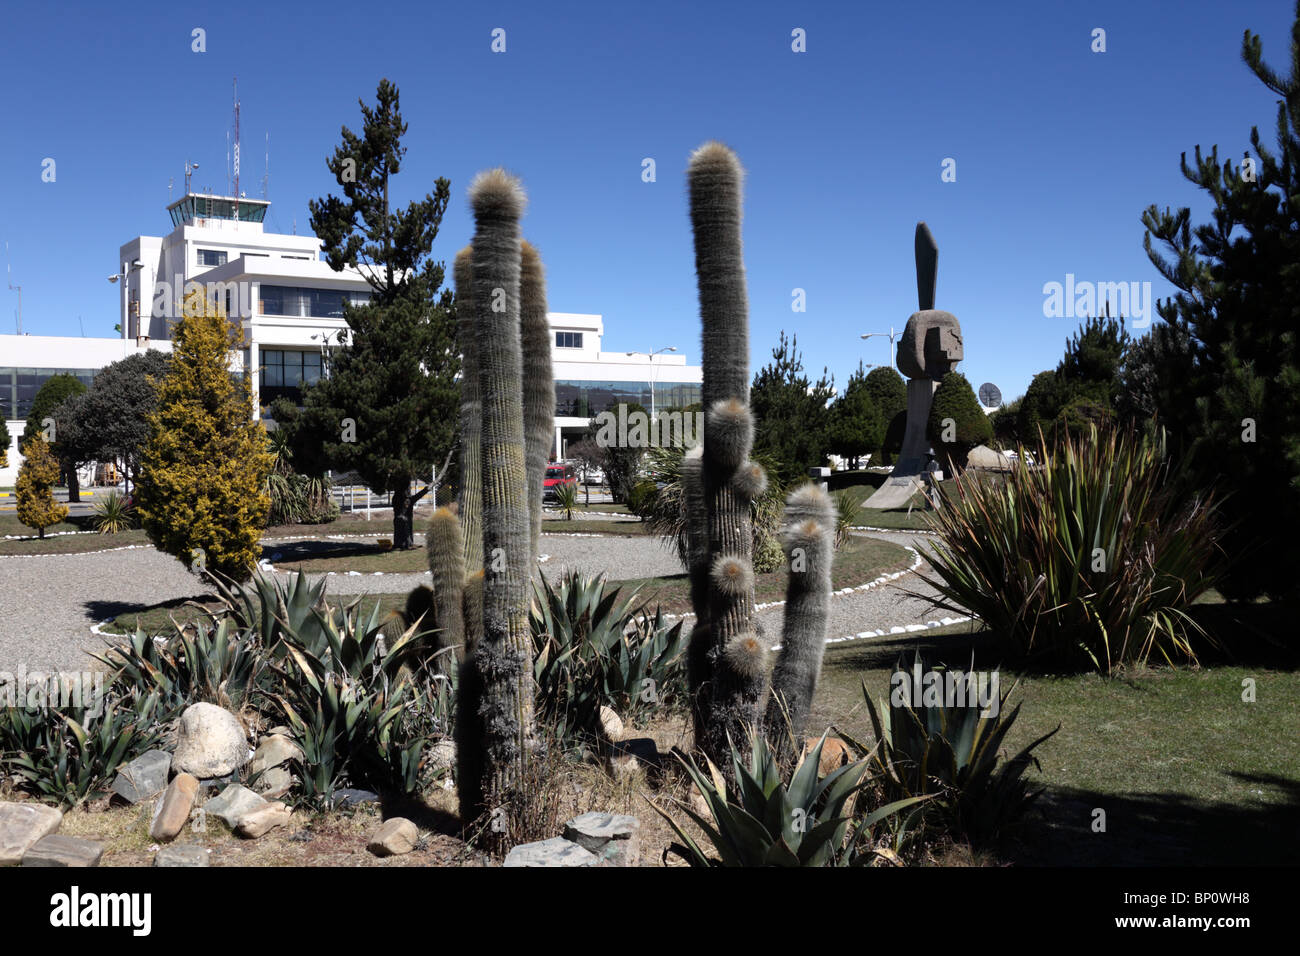 L'aéroport de la Paz / El Alto (LPB, l'aéroport international le plus élevé au monde à 4050m) et Echinopsis cactus, El Alto, Bolivie Banque D'Images